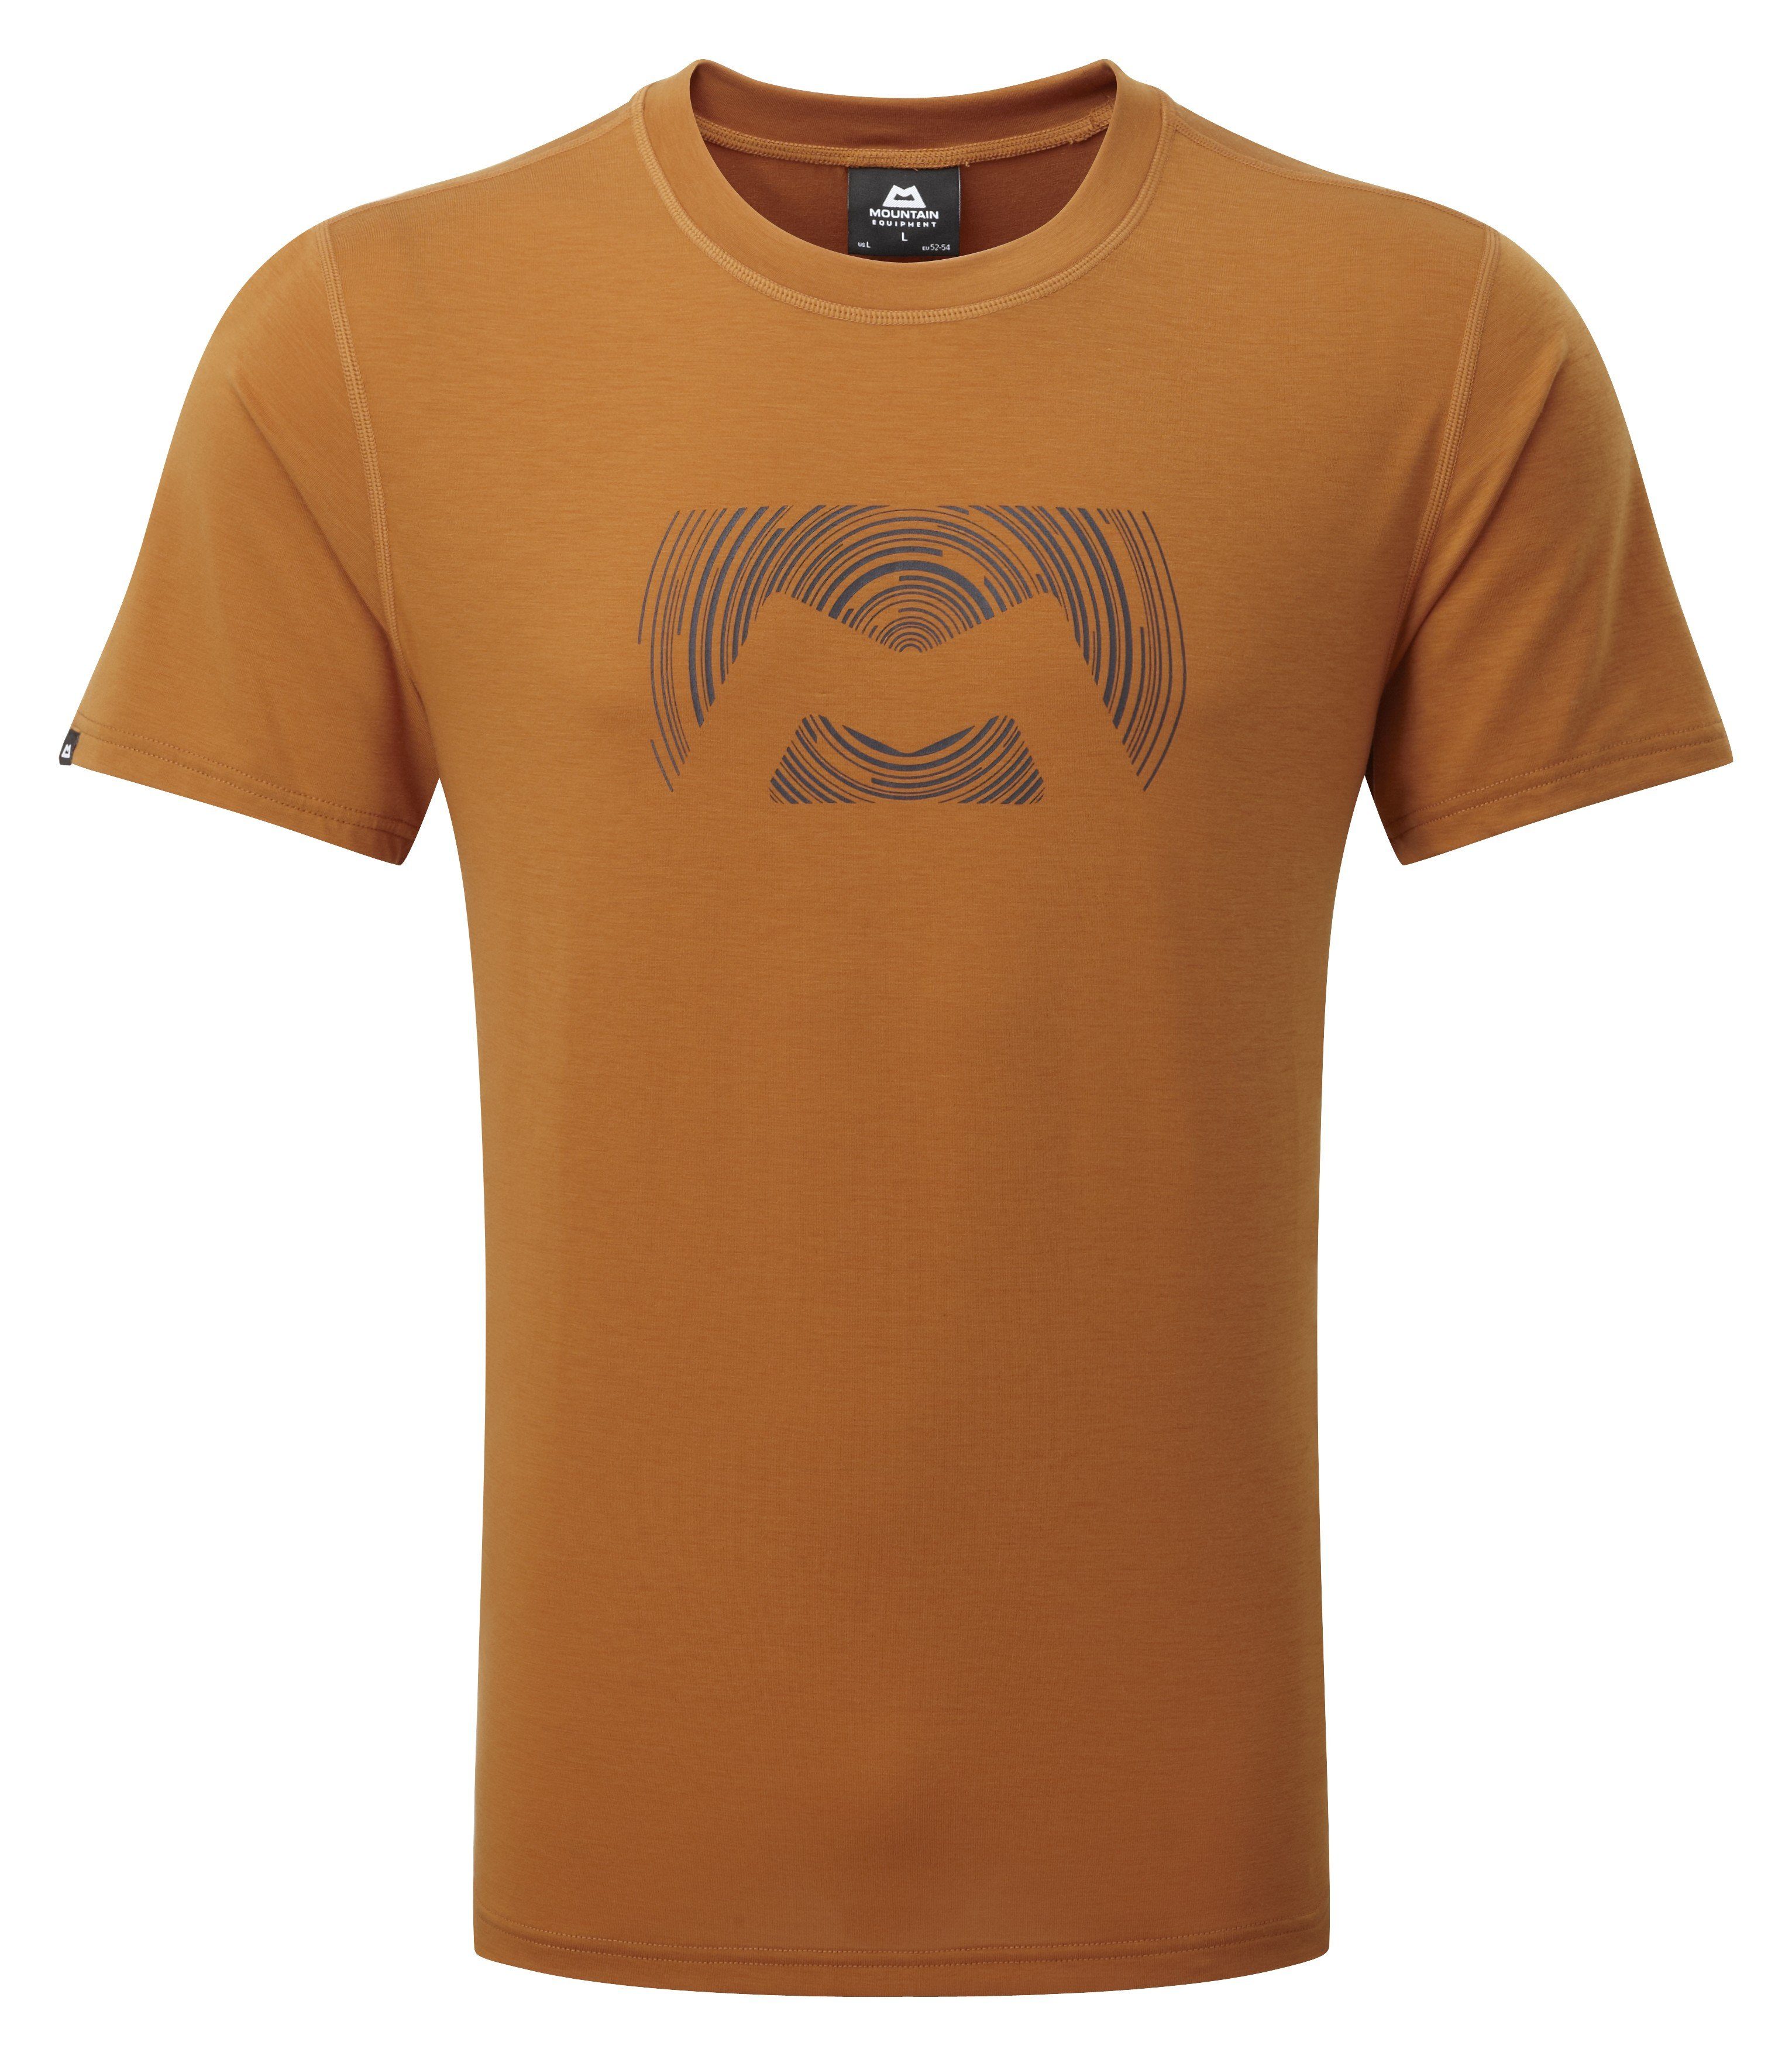 Groundup T-Shirt spice pumpkin Mountain Equipment Logo Tee